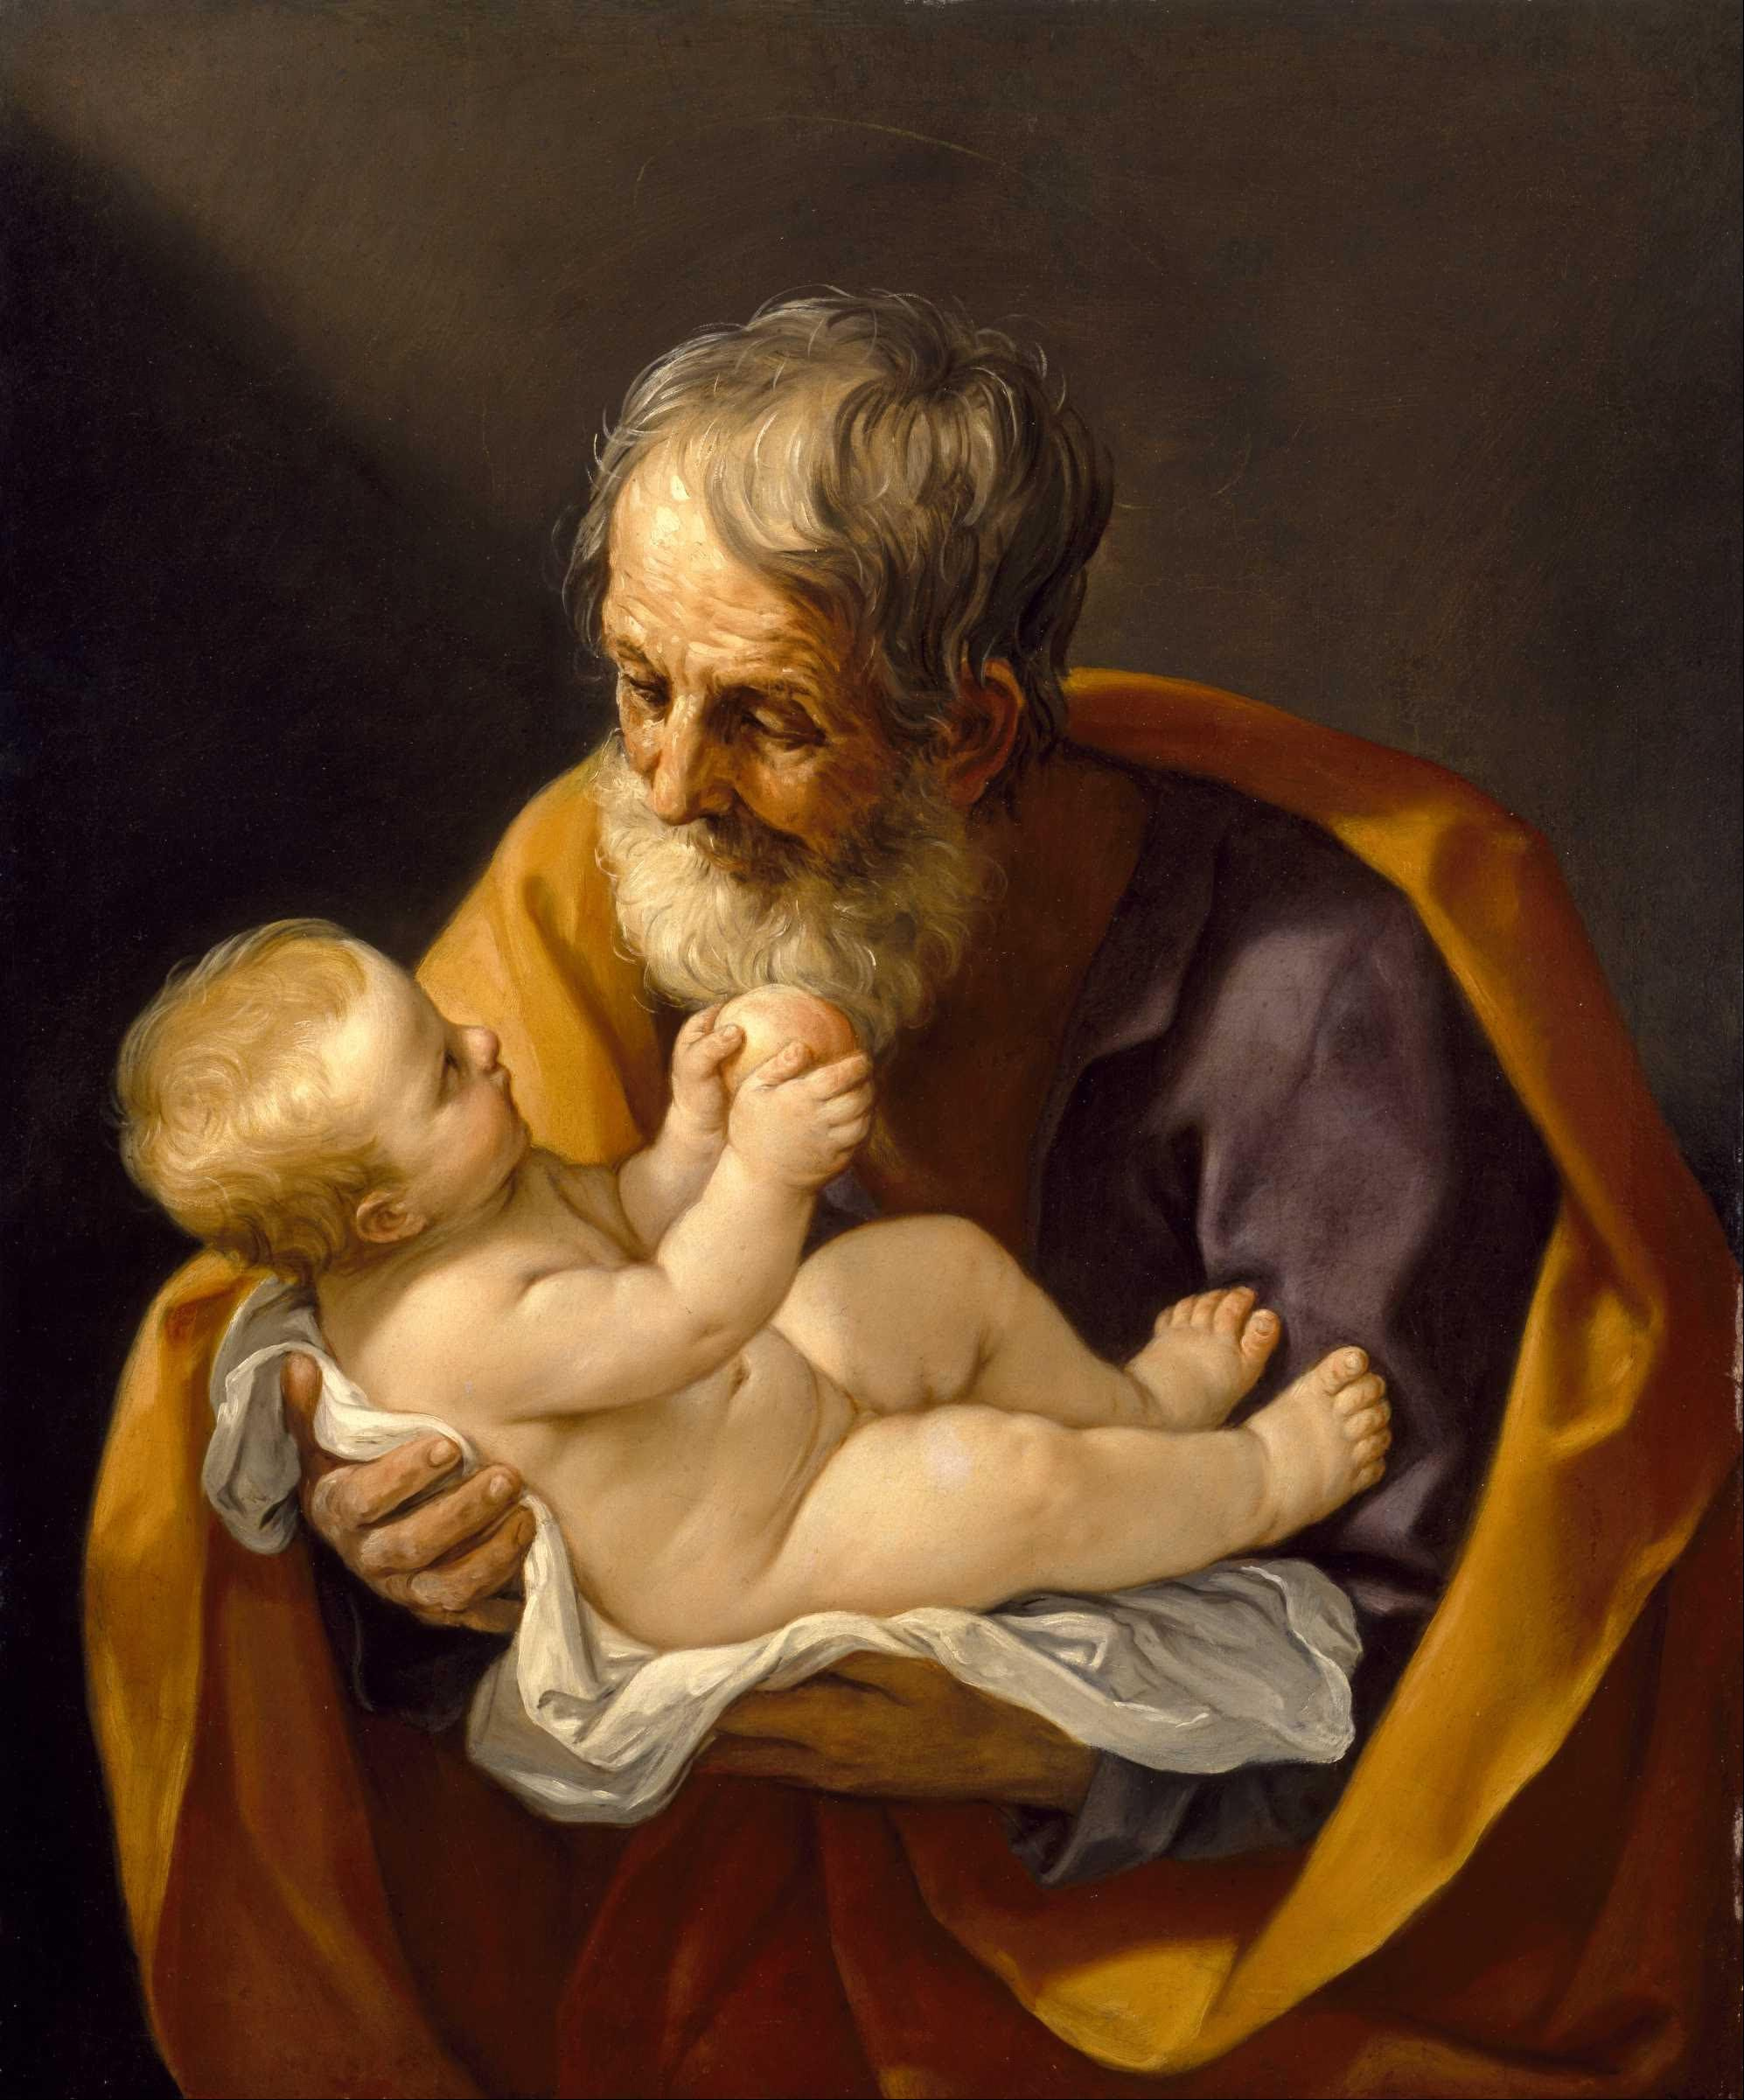 Święty Józef z Dzieciątkiem by Guido Reni - 1640 - 72.4 x 88.9 cm 